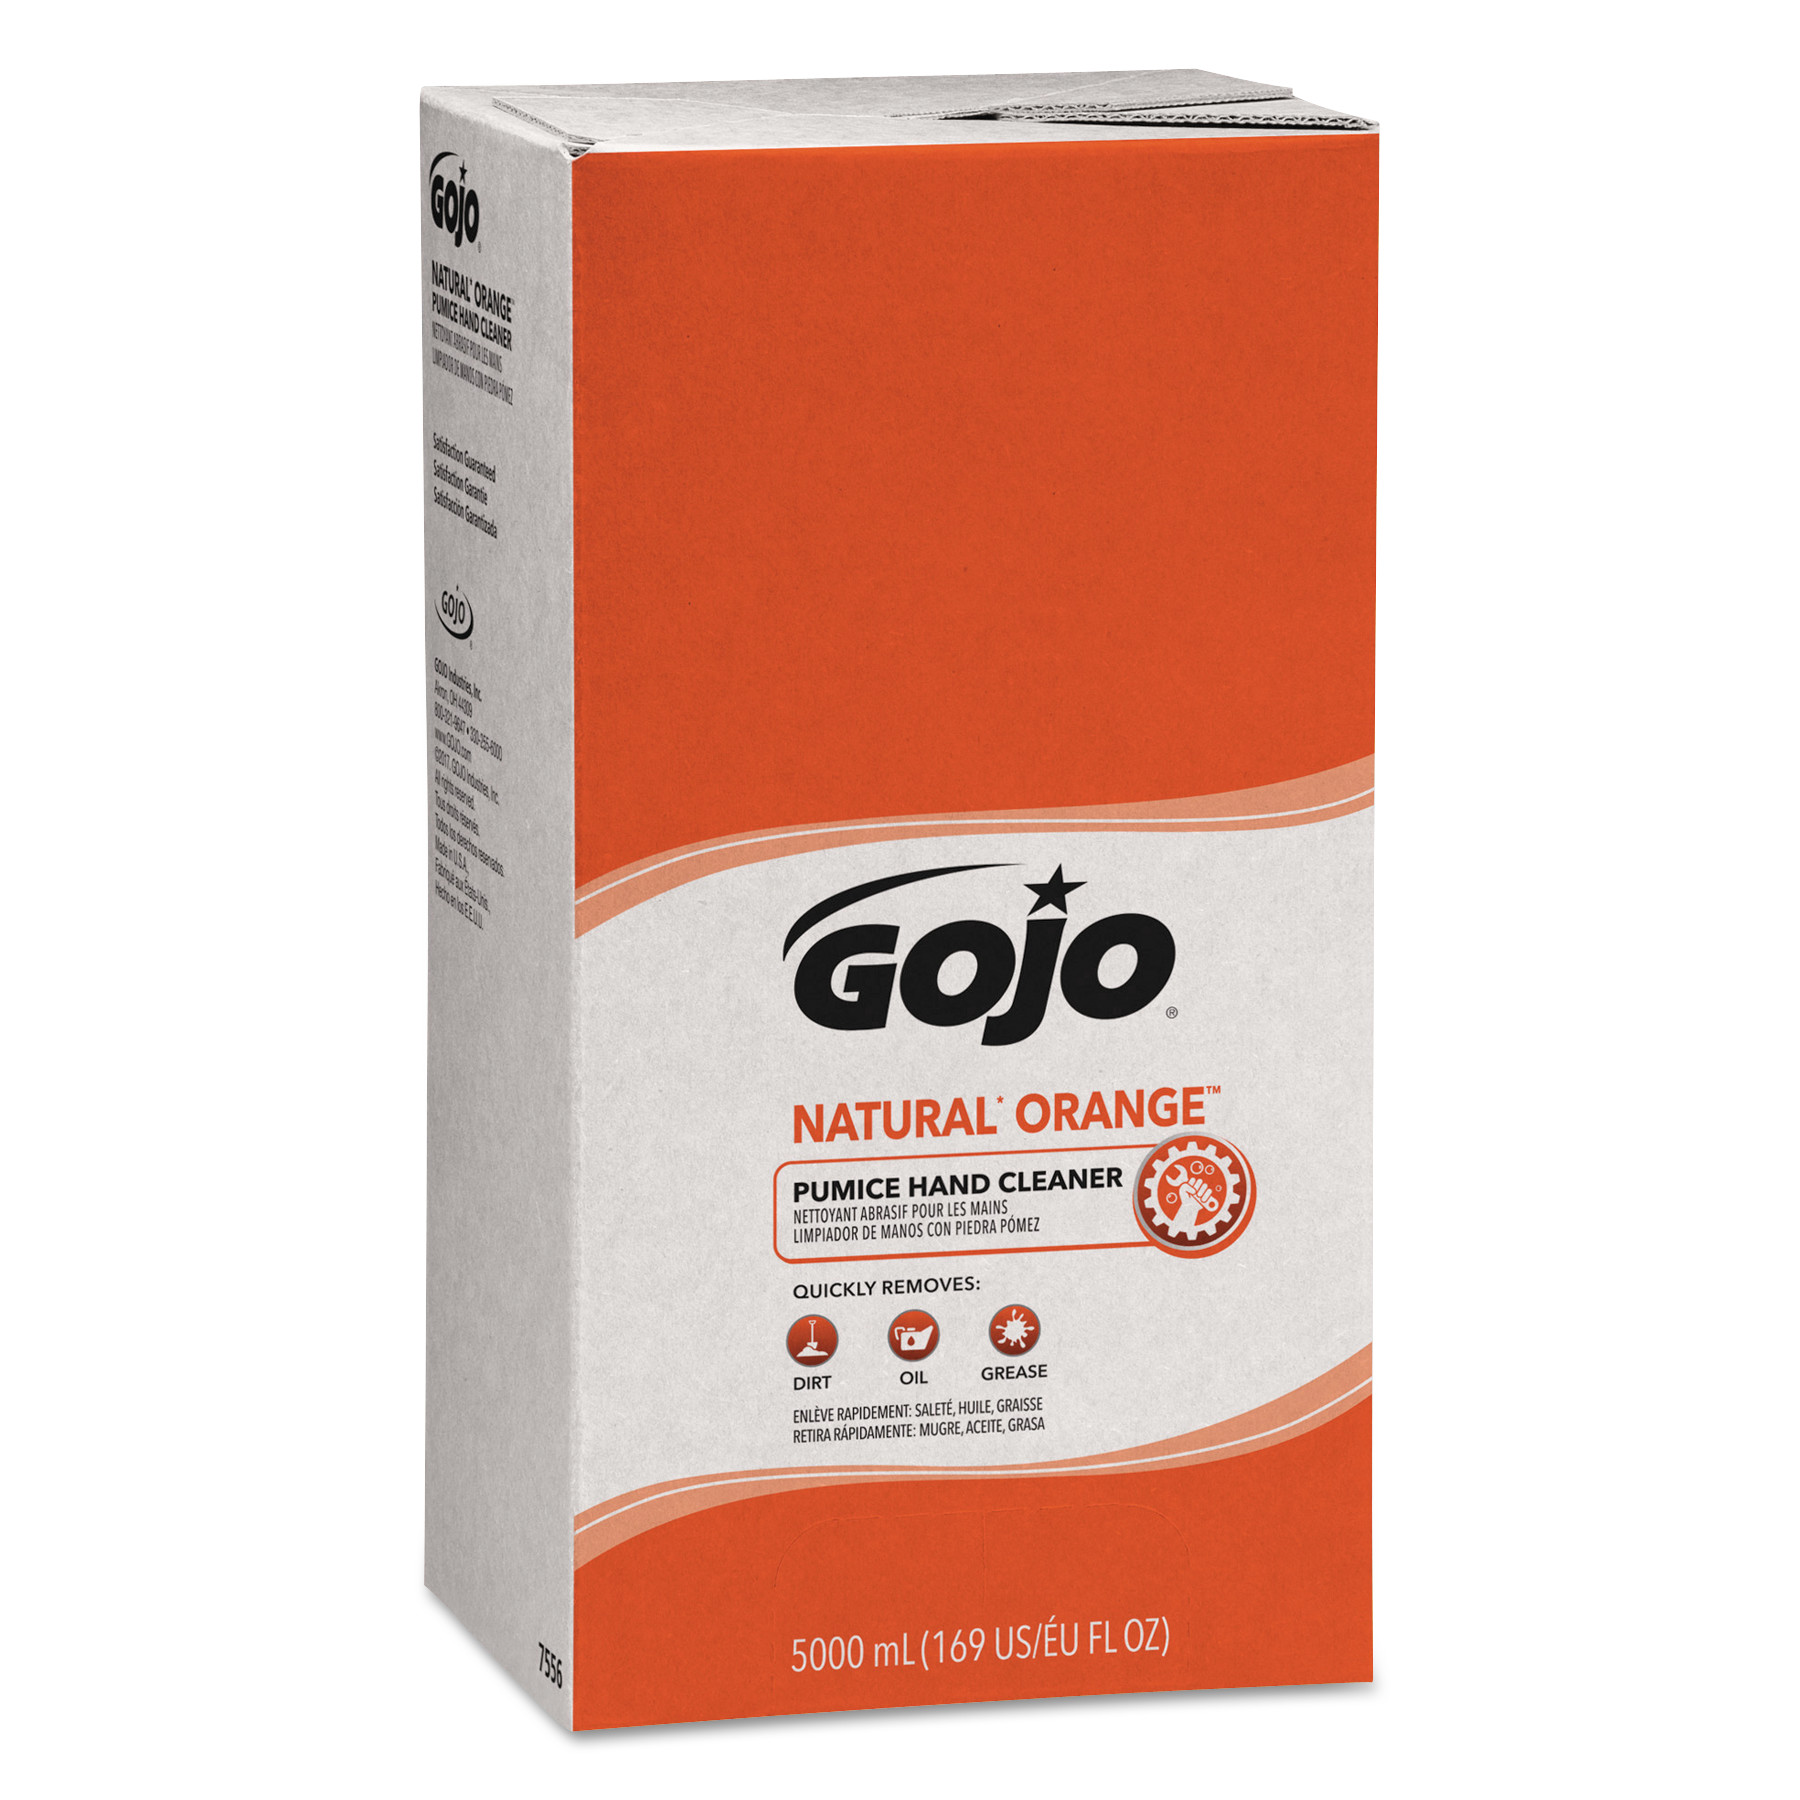  GOJO 7556-02 NATURAL ORANGE Pumice Hand Cleaner Refill, Citrus Scent, 5000 mL, 2/Carton (GOJ7556) 